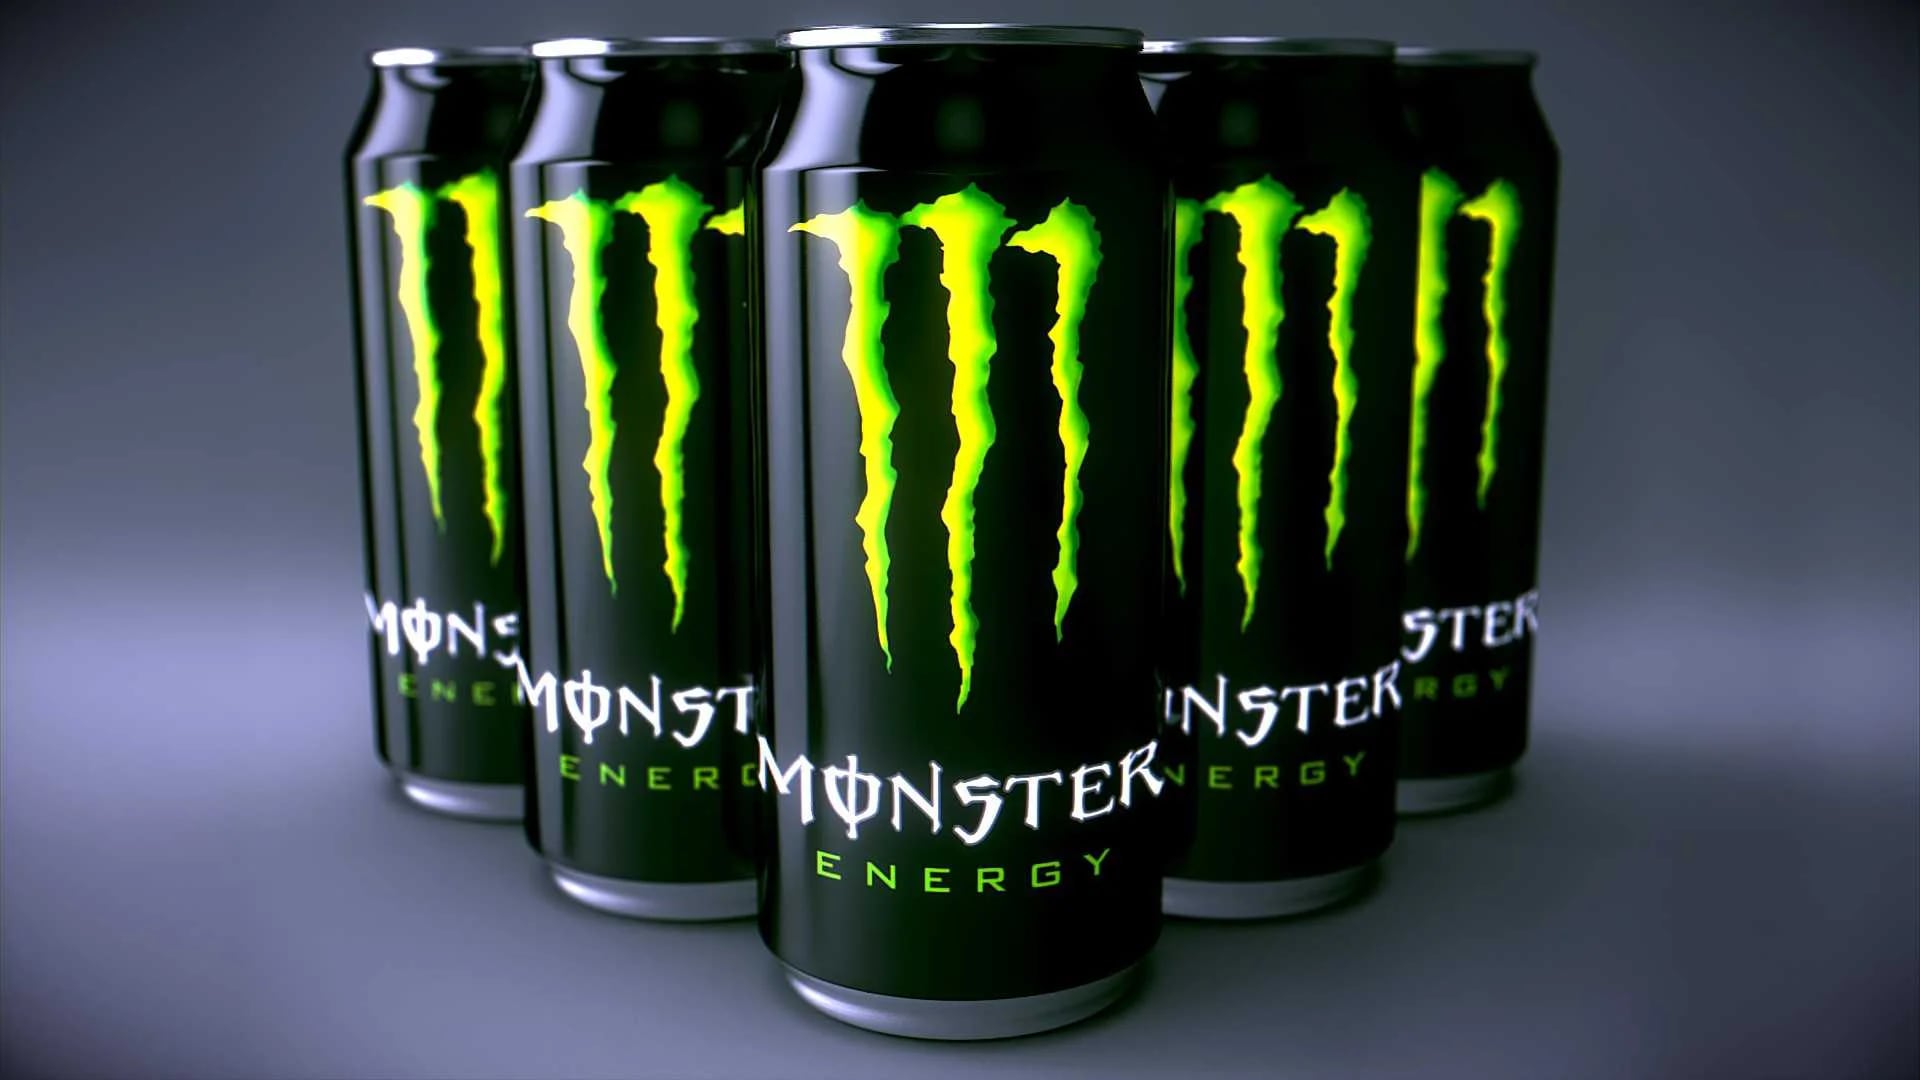 Una sola bebida energética del tipo Monster Energy, Red Bull, 5-Hour Energy y Rockstar puede contener muchas veces la cantidad de cafeína de una taza de café.